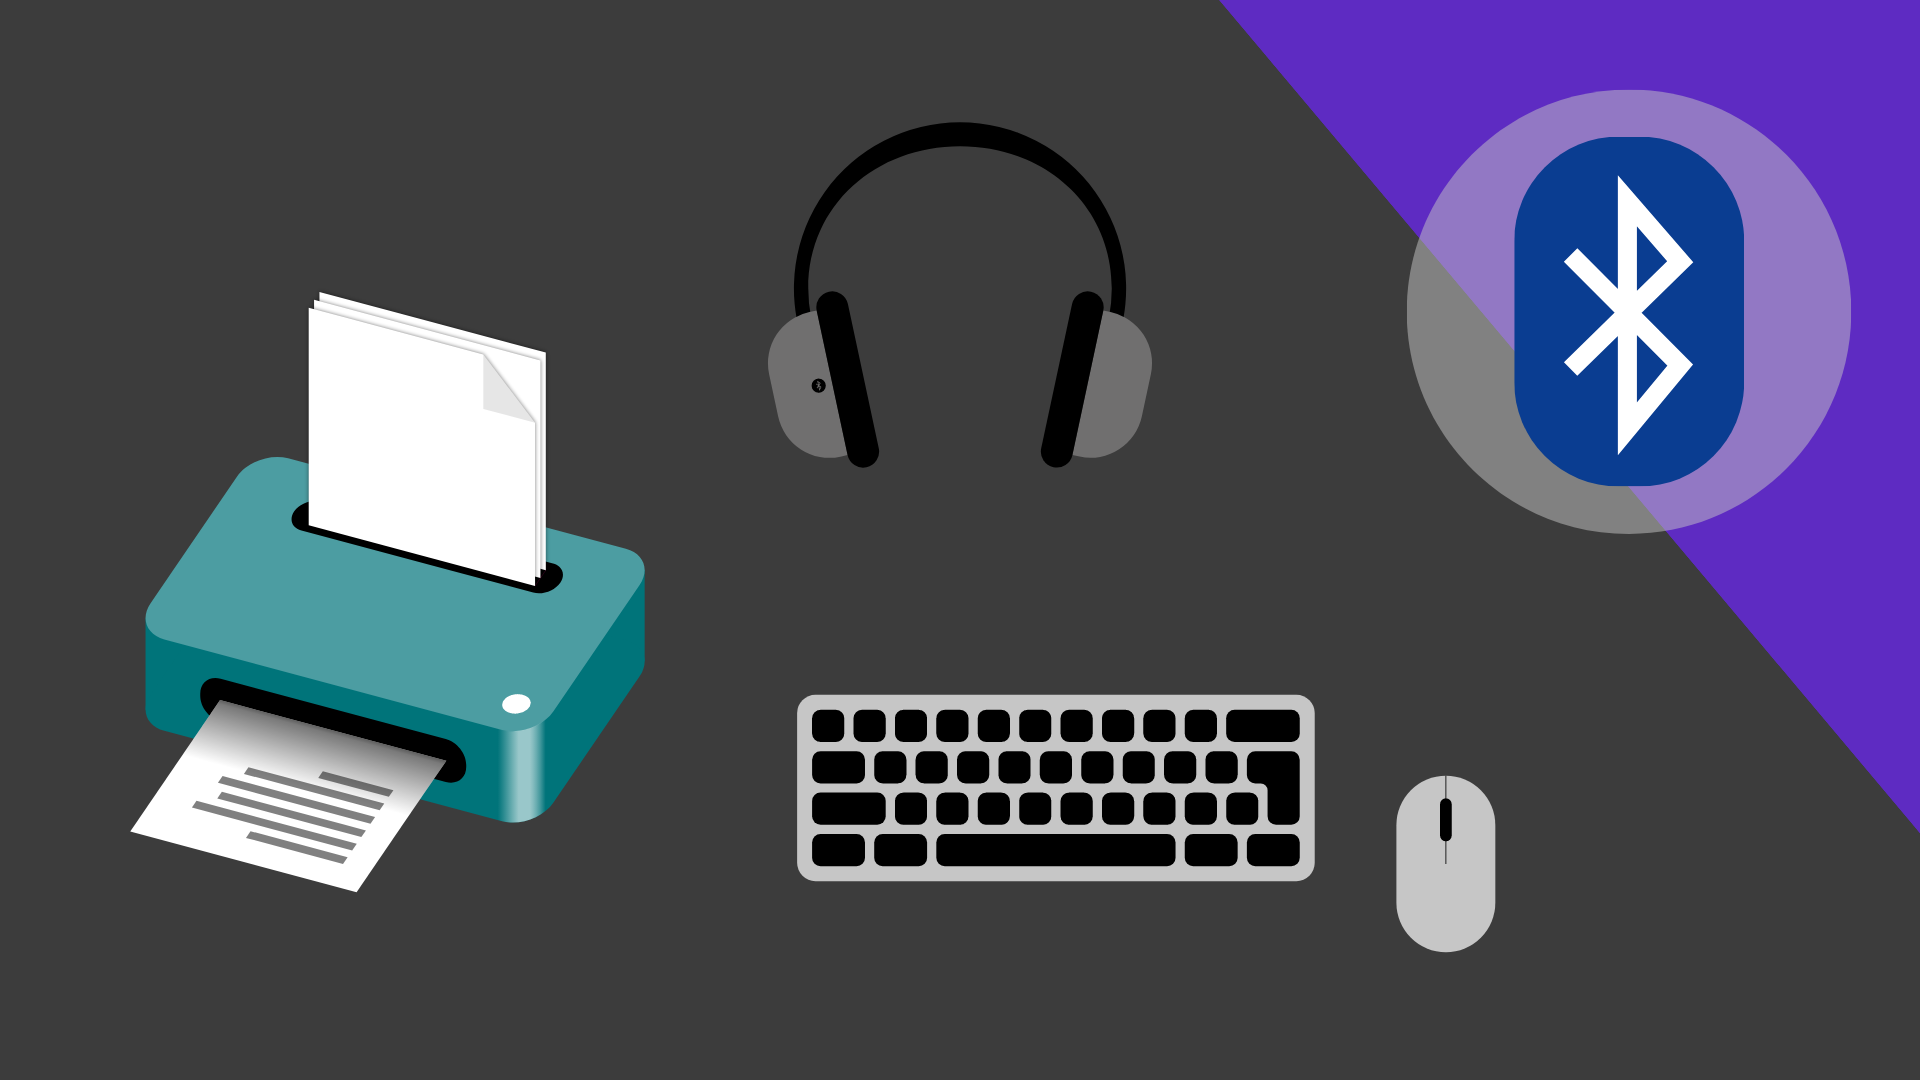 Zu sehen ist ein Drucker, Kopfhörer, eine Tastatur und eine Computermaus. Oben rechts befindet sich das Bluetooth Symbol.